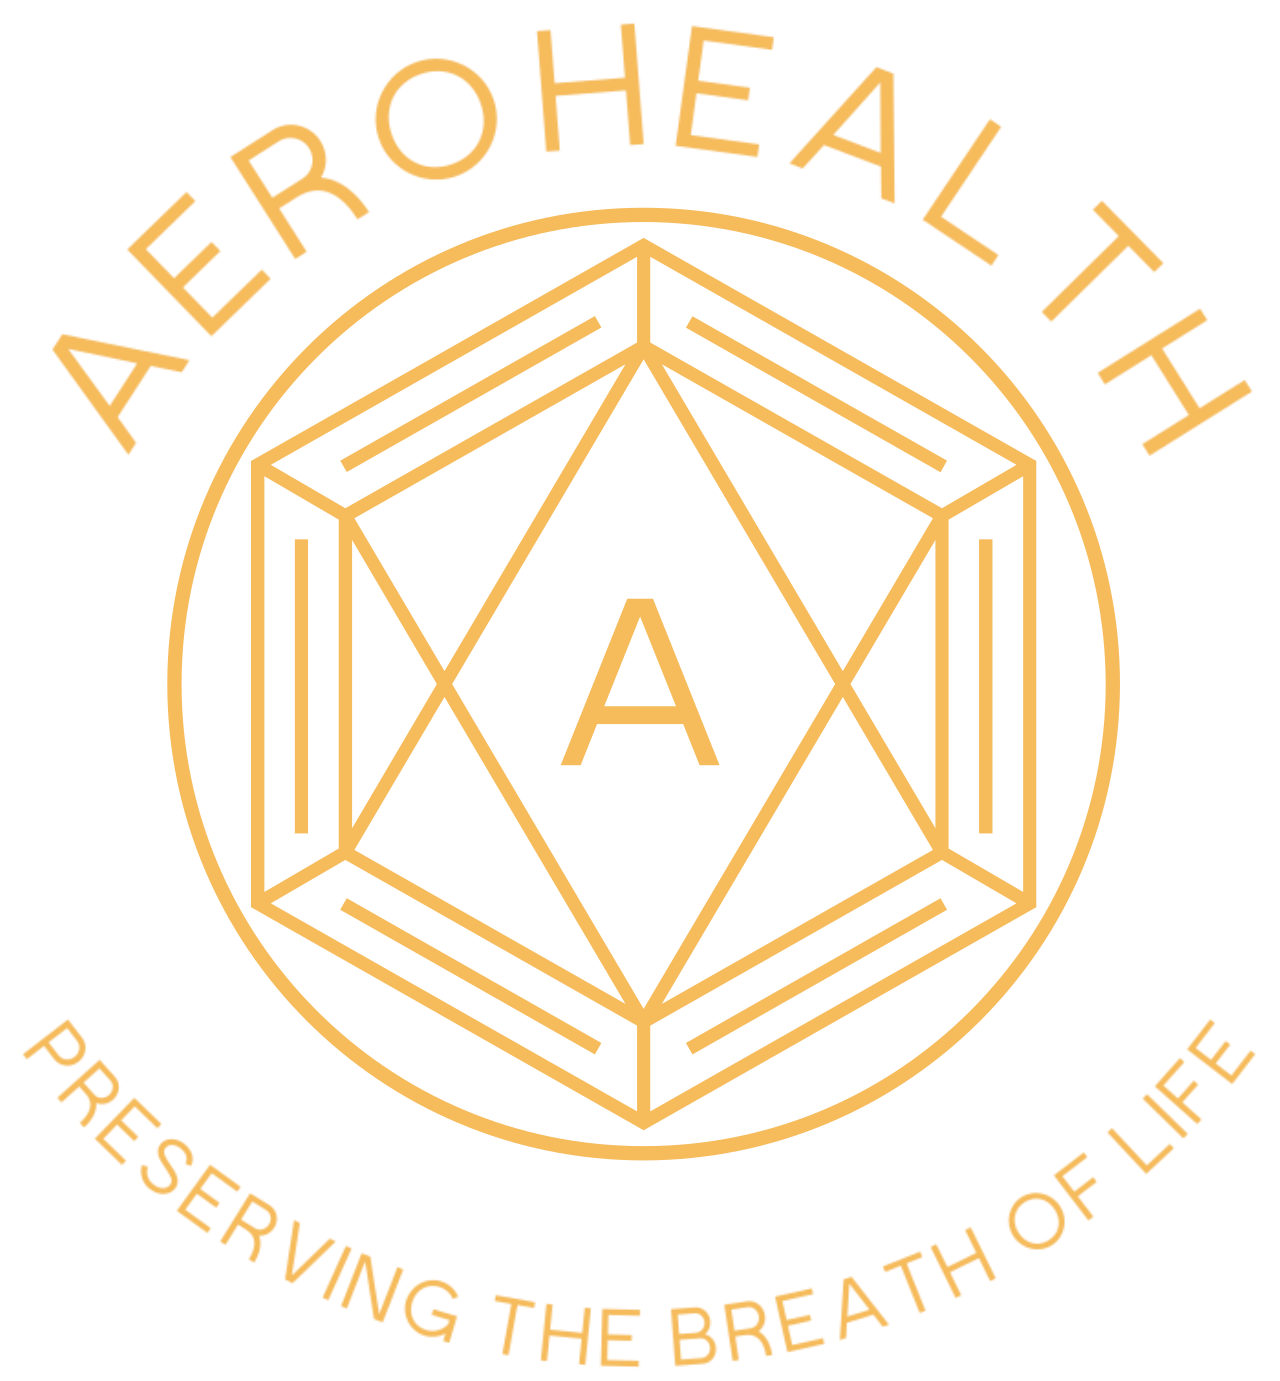 AeroHealth's logo